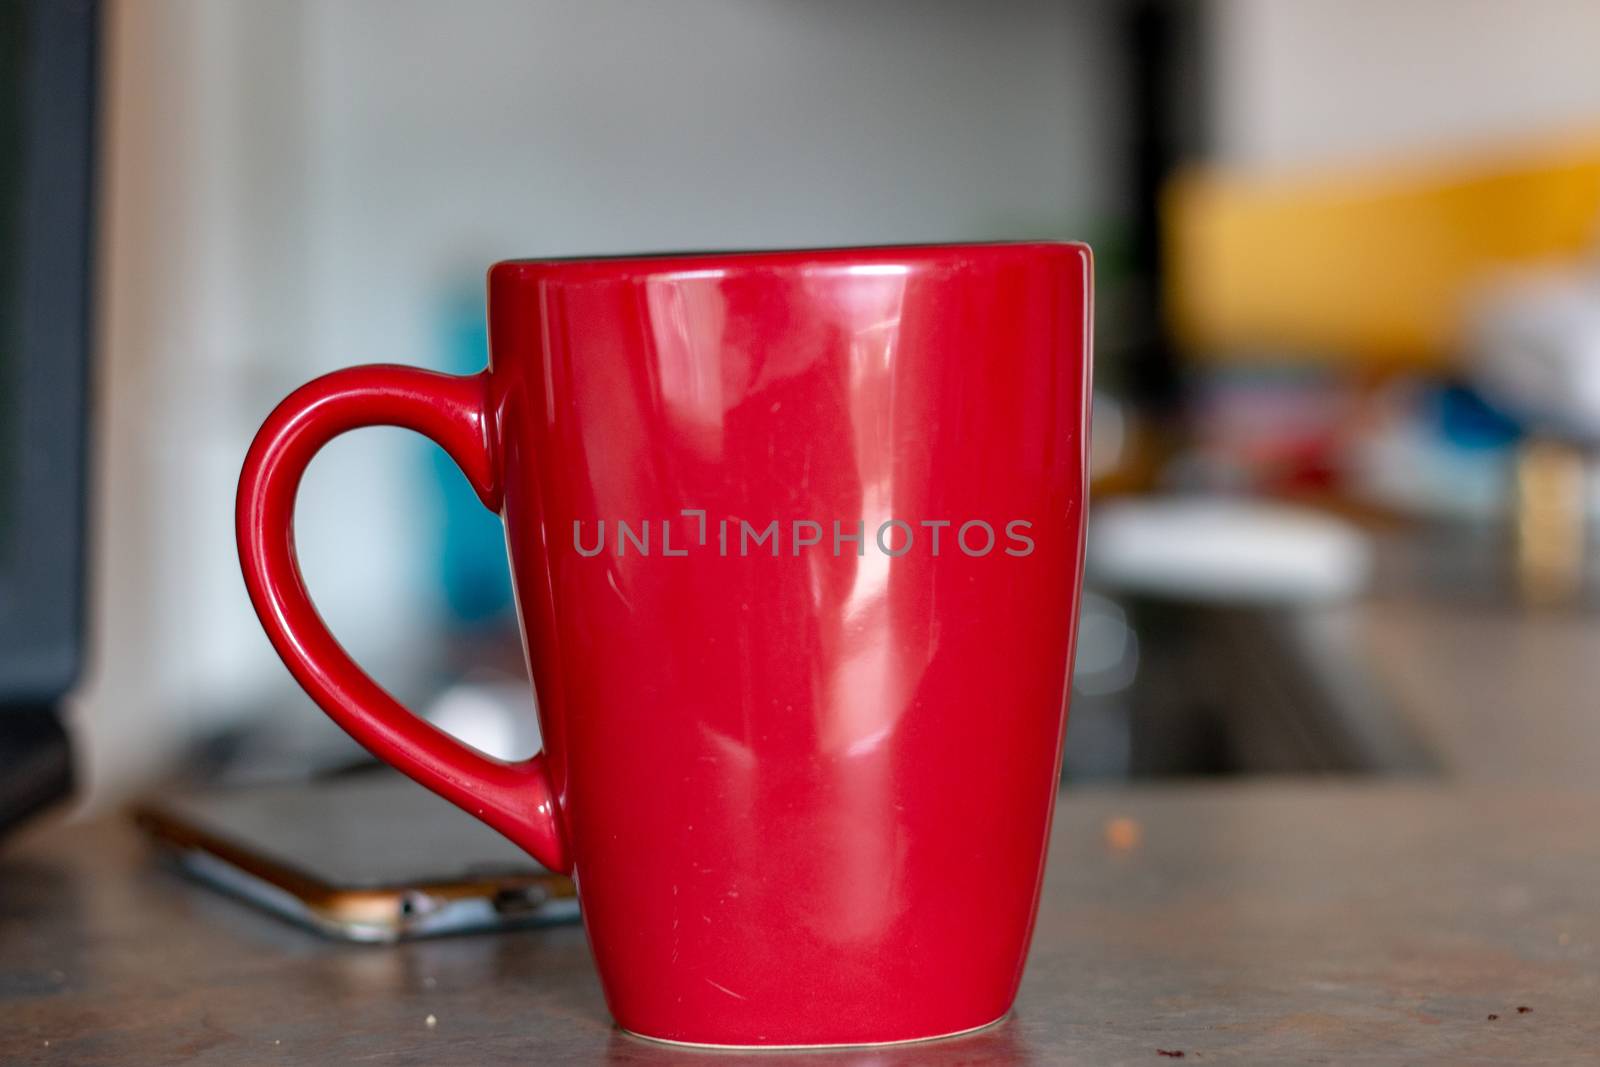 Old red coffee mug